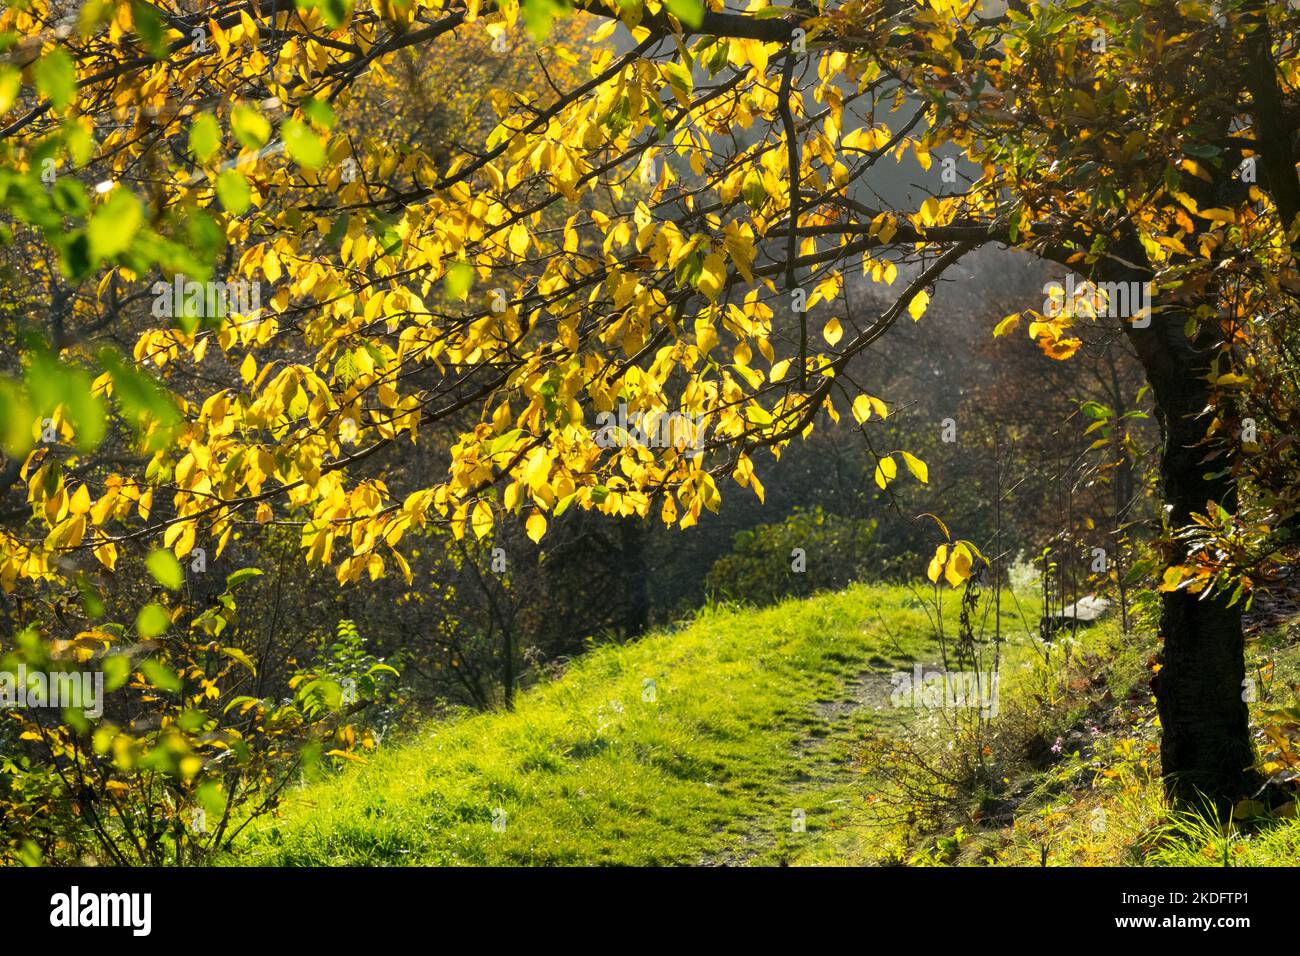 Herbstbaum Licht Herbststimmung im Garten, der Baum am Hang über dem Fußweg gelbe Blätter, sonniger Tag Herbststimmung Herbstbaumweg Stockfoto